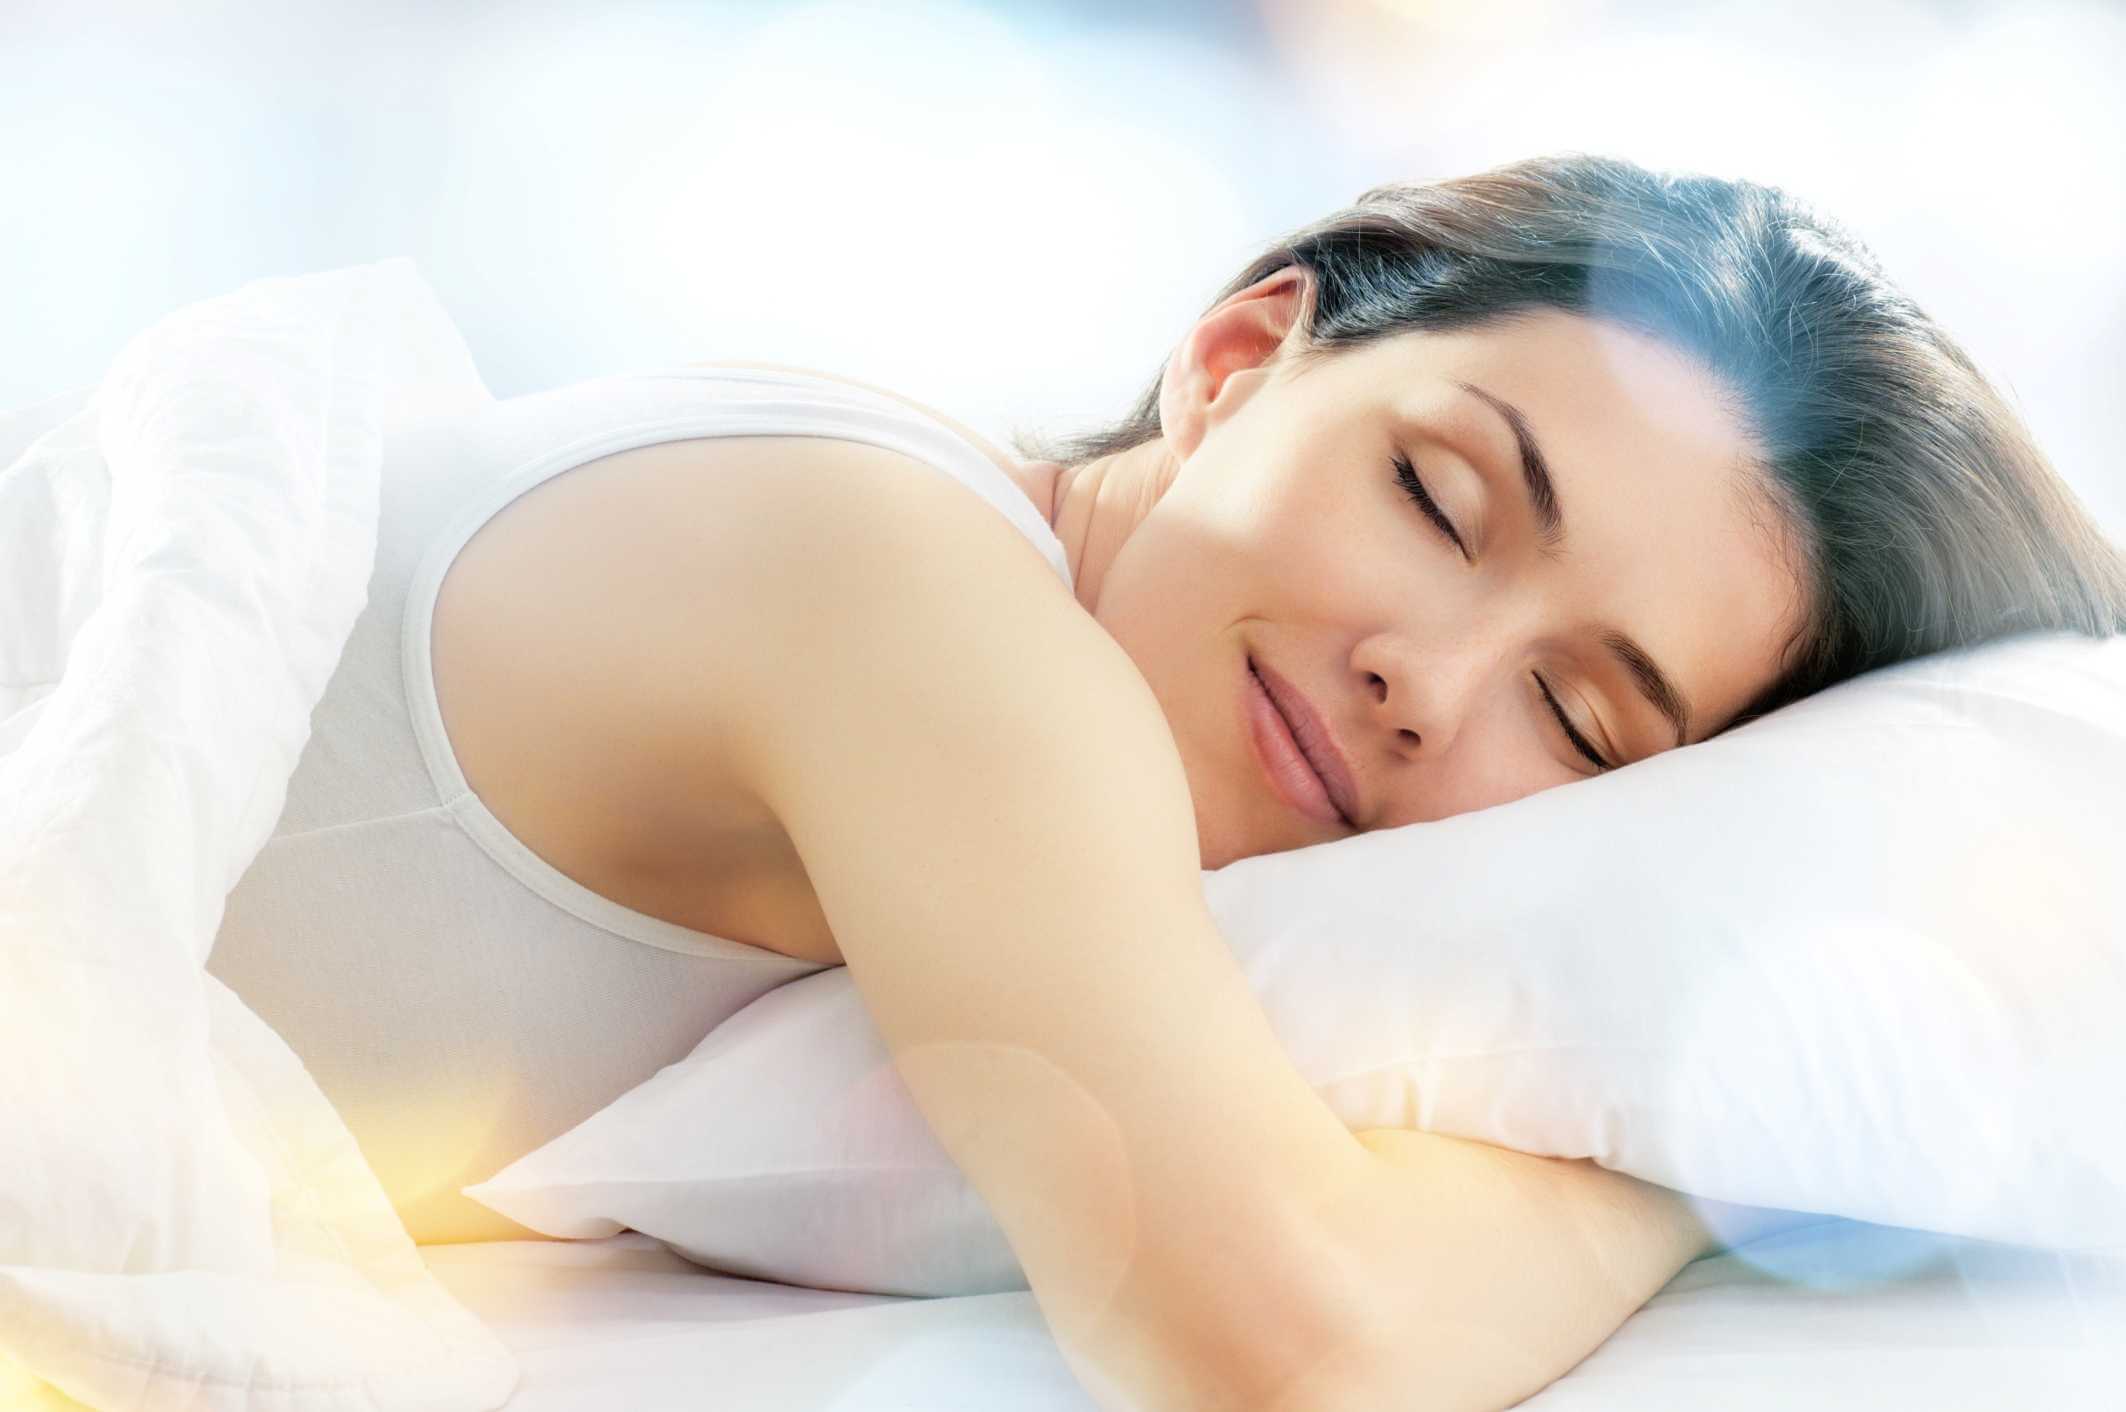 Dormir bien para aumentar los niveles de serotonina de forma natural.